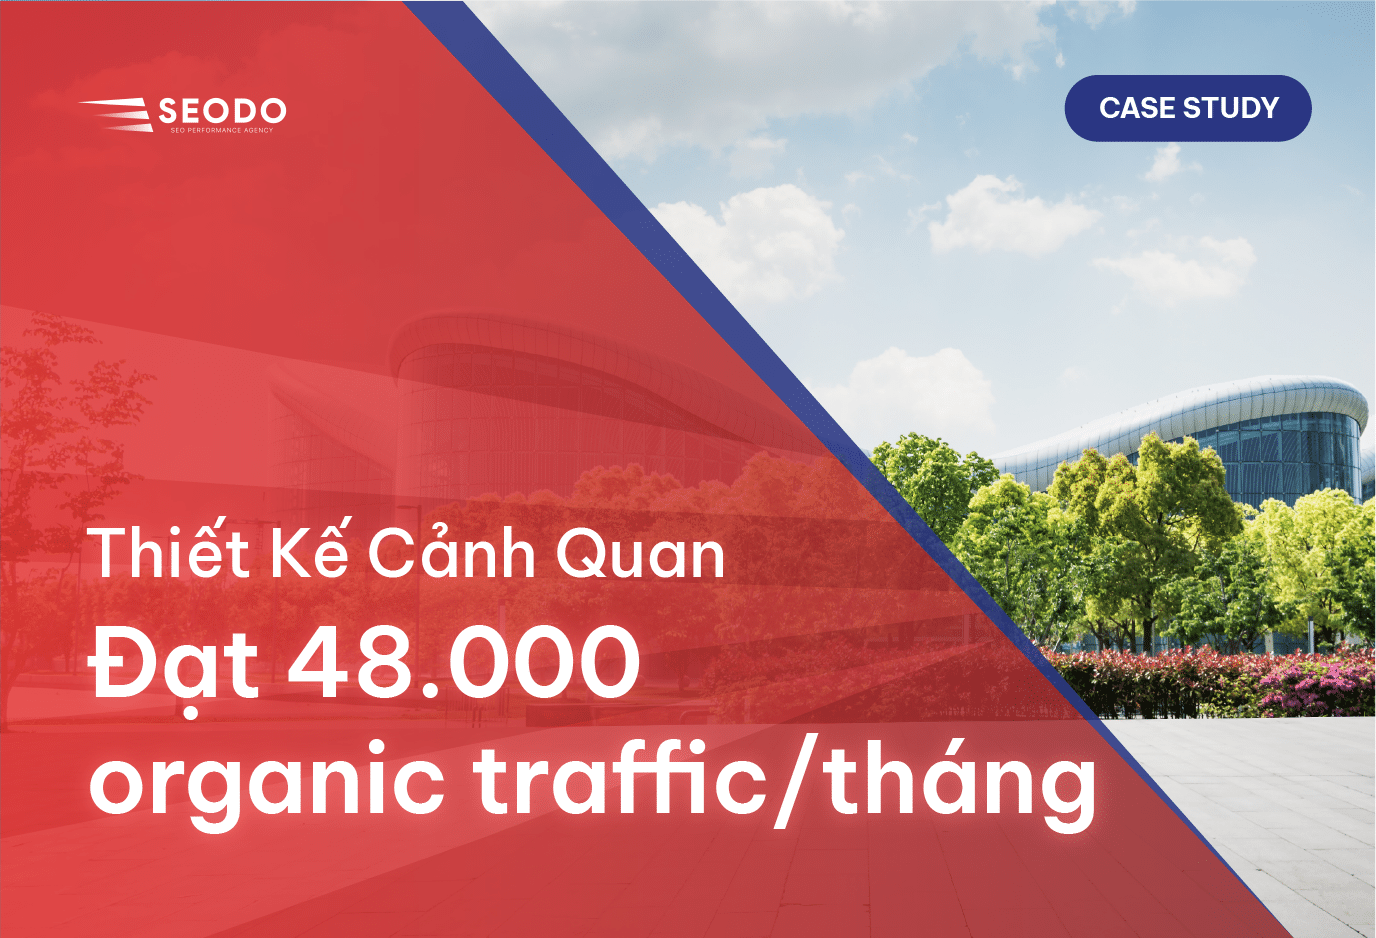 SEO Mảng Thiết Kế Cảnh Quan: Đạt 48.000 Organic Traffic/tháng